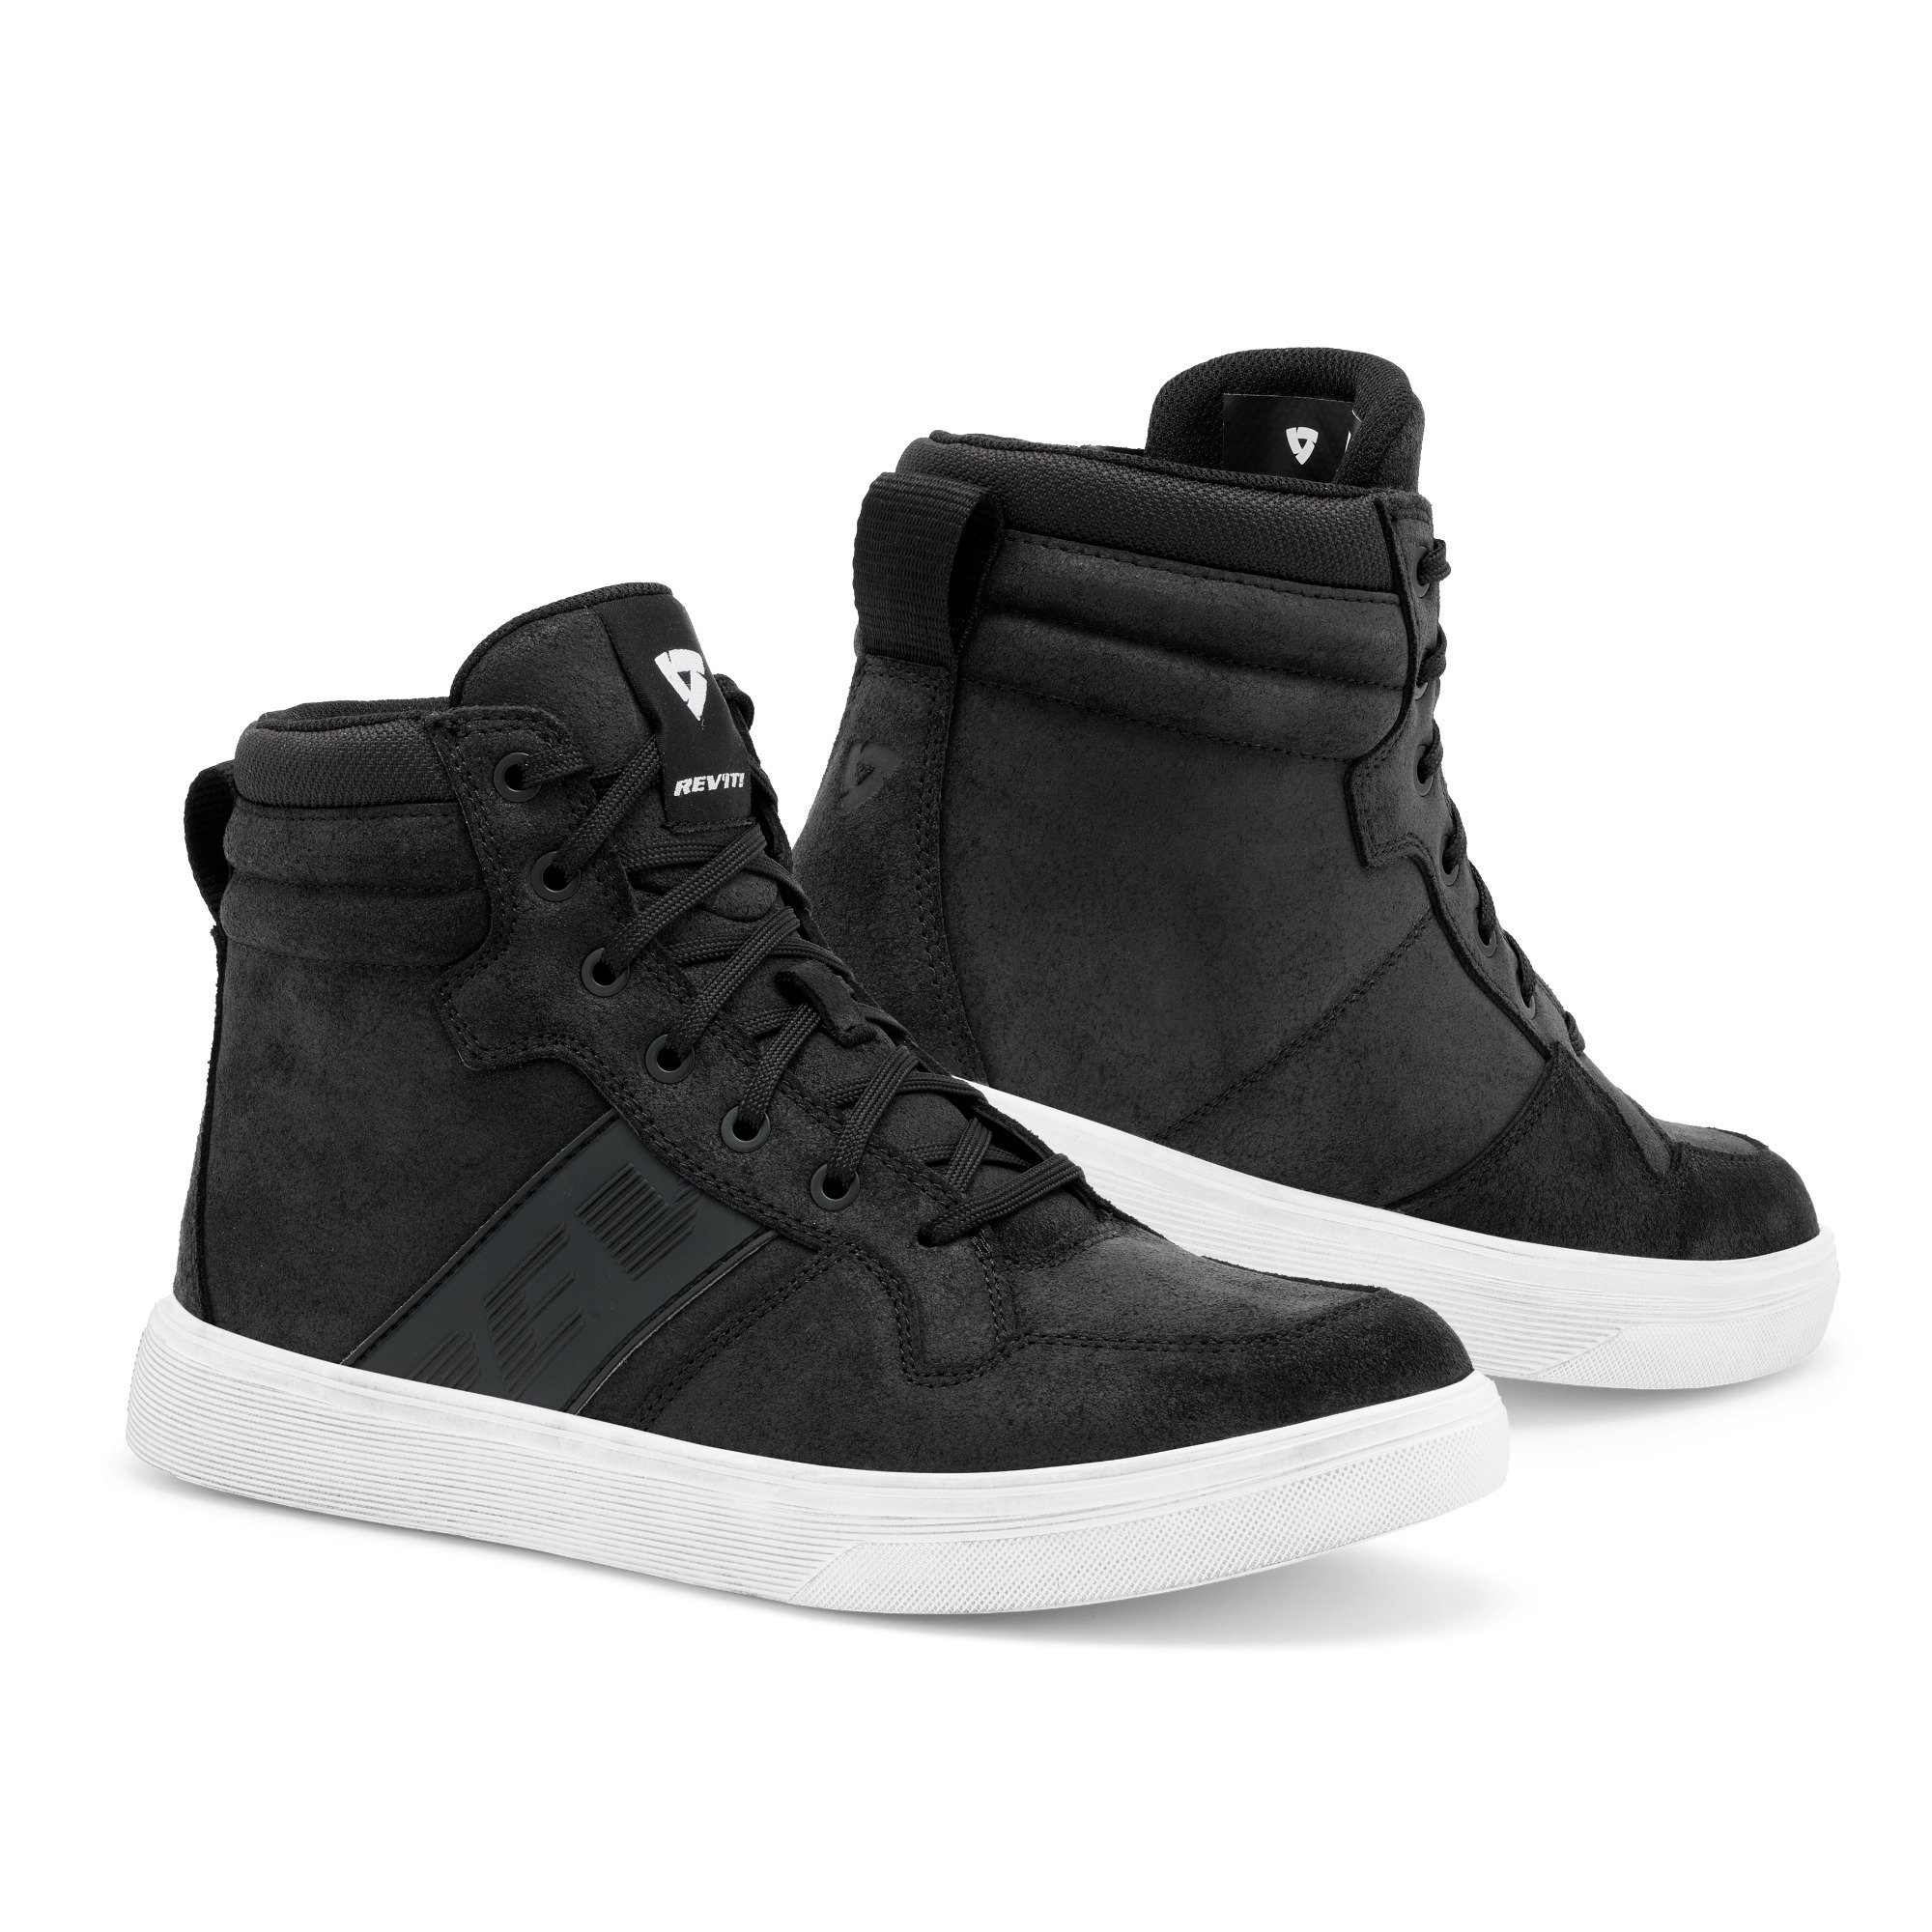 Image of REV'IT! Kick Shoes Black White Size 41 EN